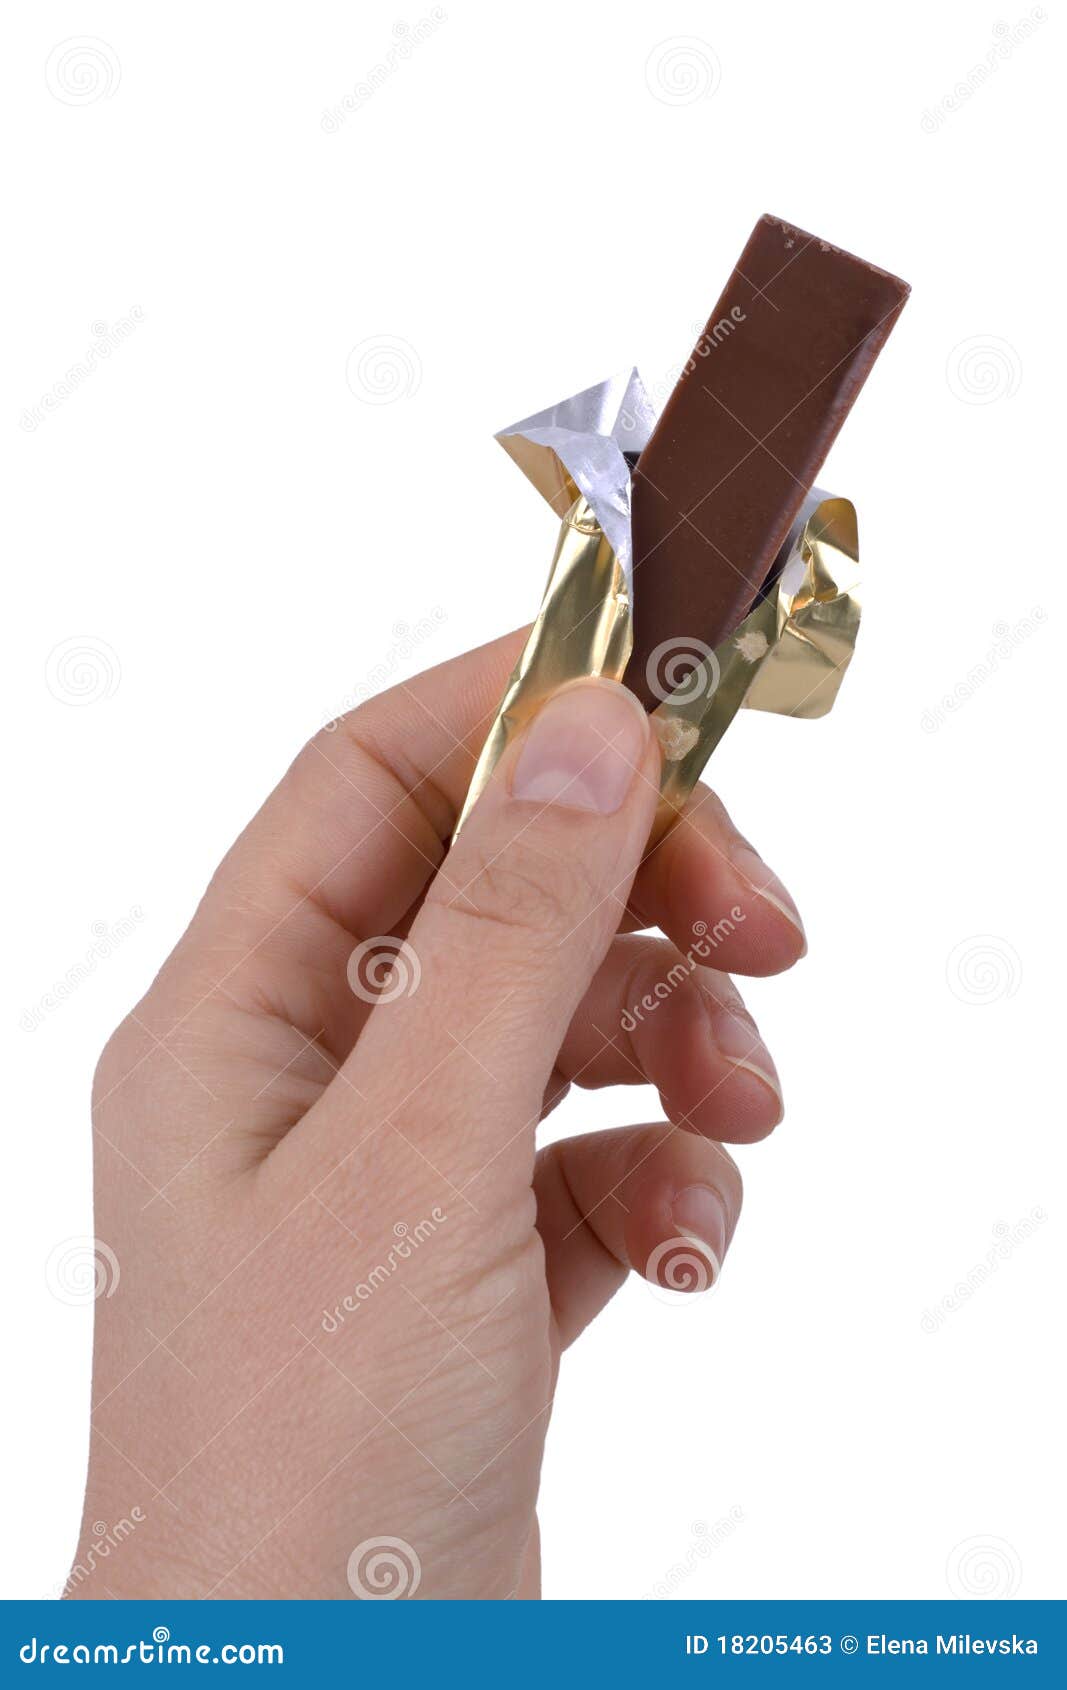 Дядя тянет руку в руке шоколадка. Протянутая рука с шоколадкой. Шоколадка в руке.